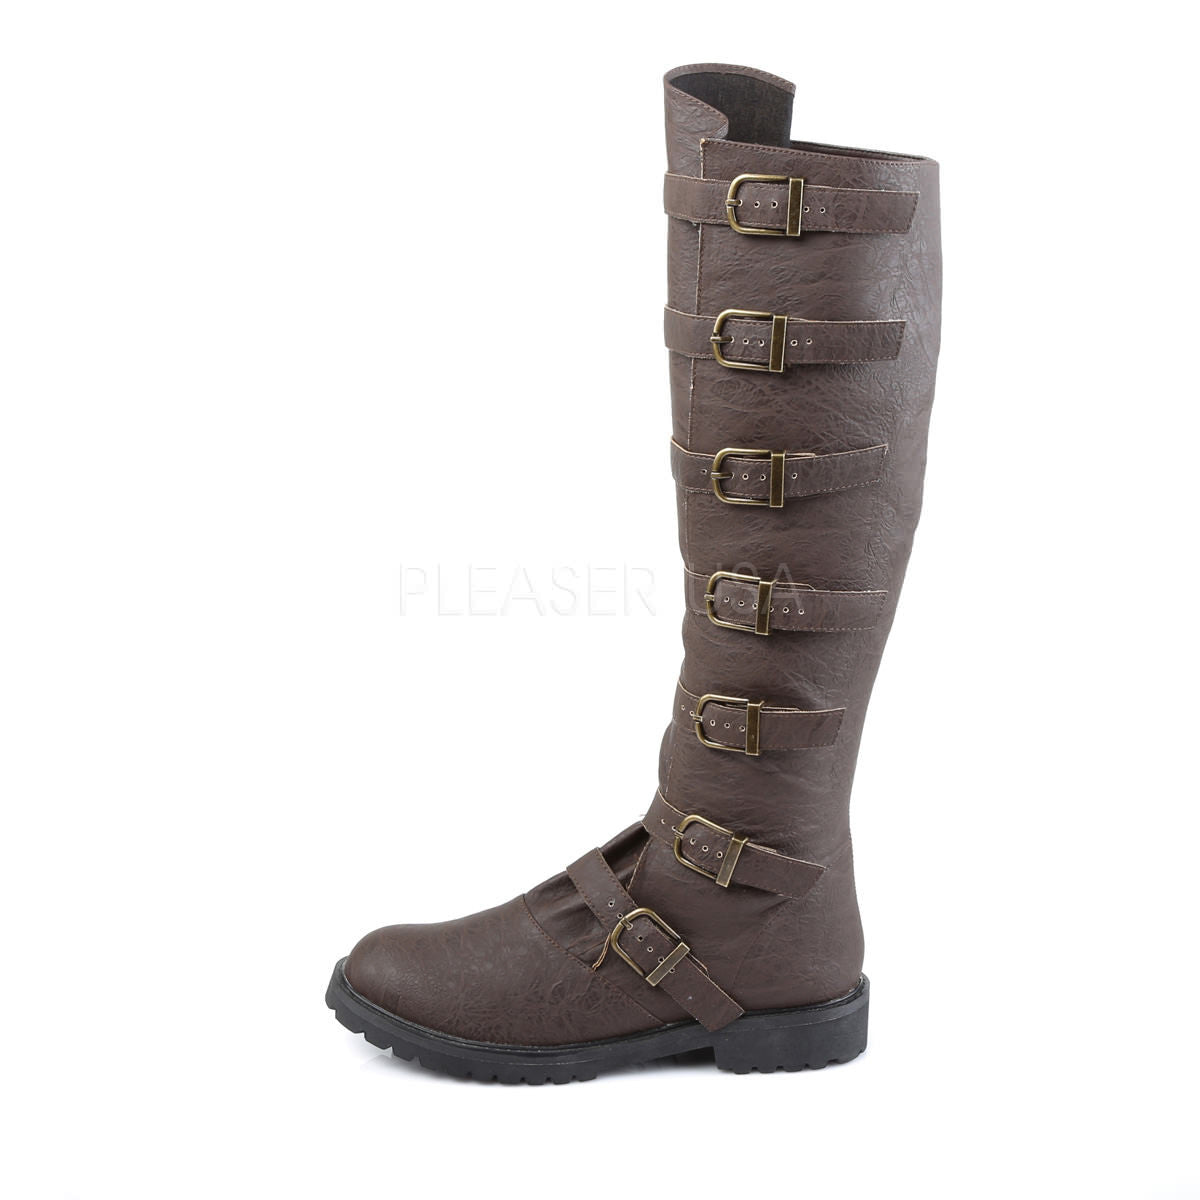 GOTHAM-110 Brown Men's Renaissance Boots